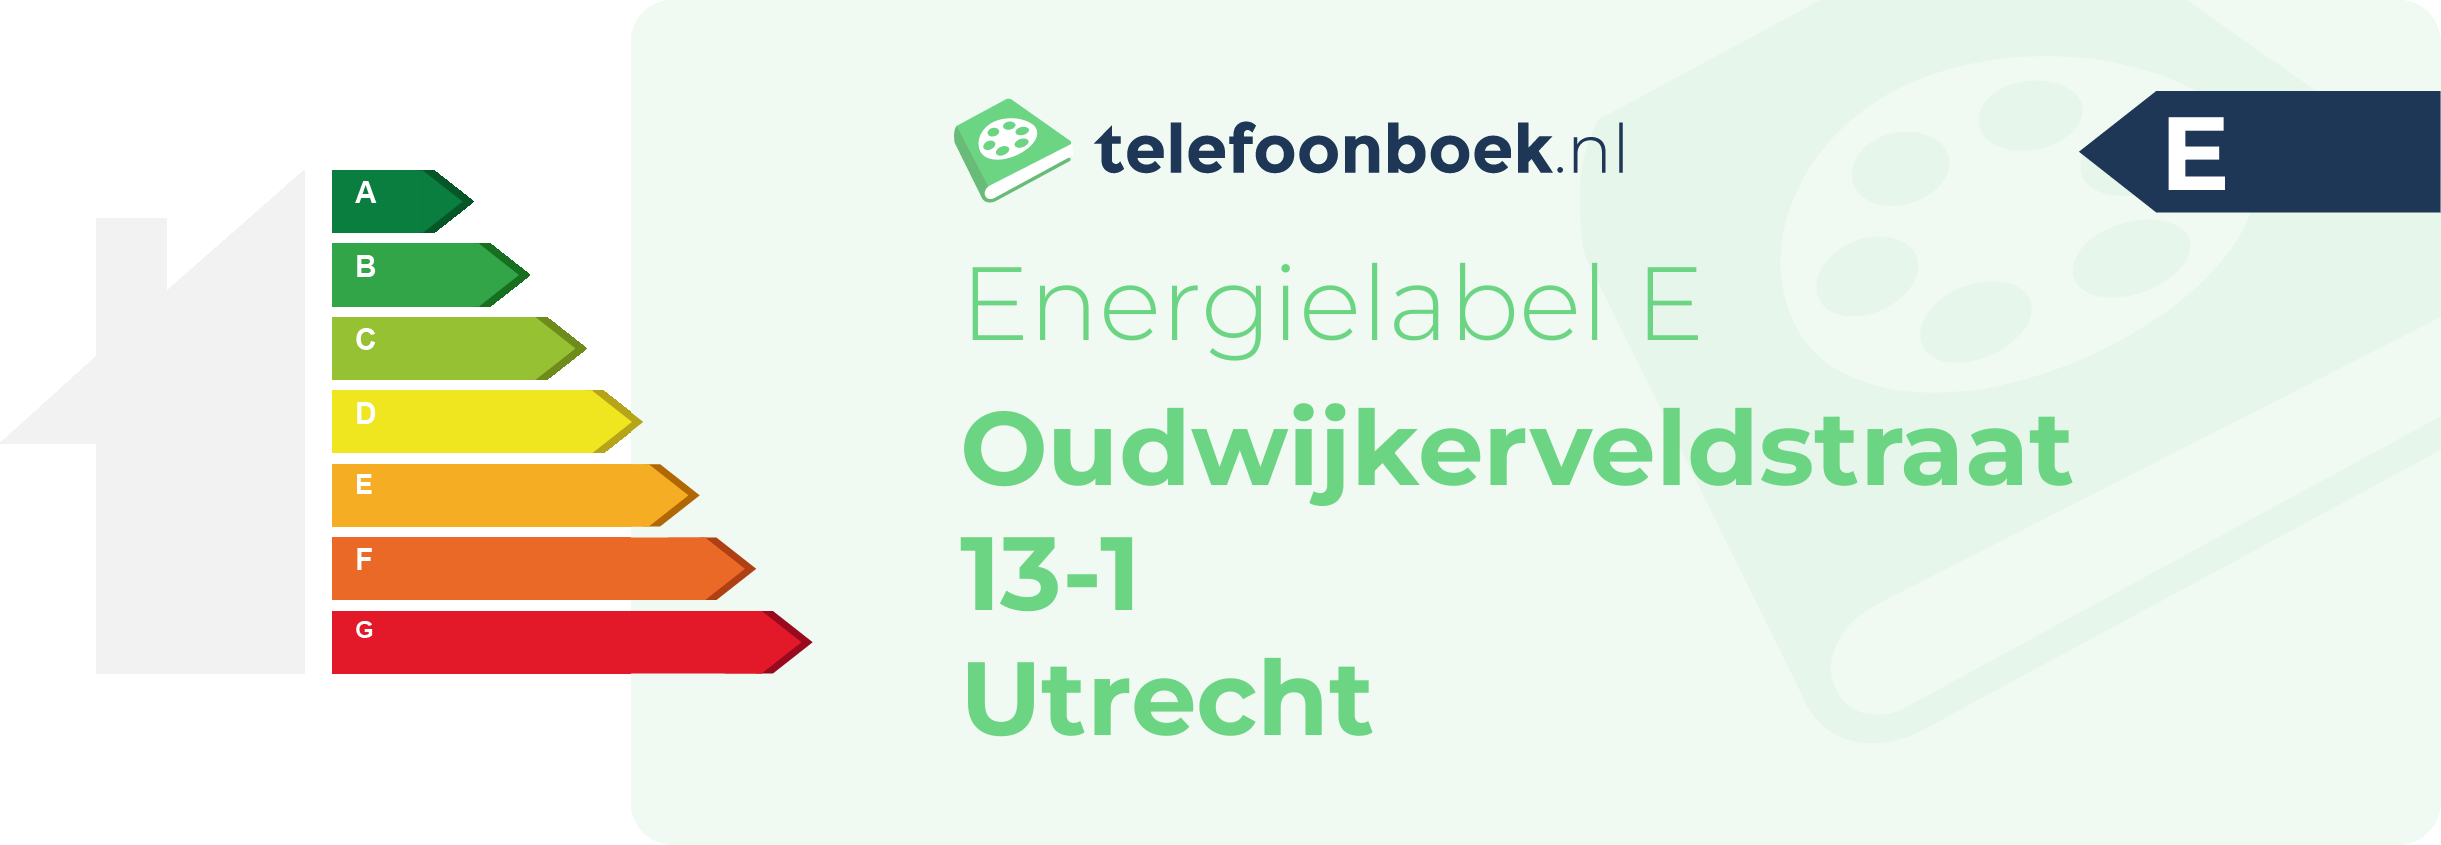 Energielabel Oudwijkerveldstraat 13-1 Utrecht